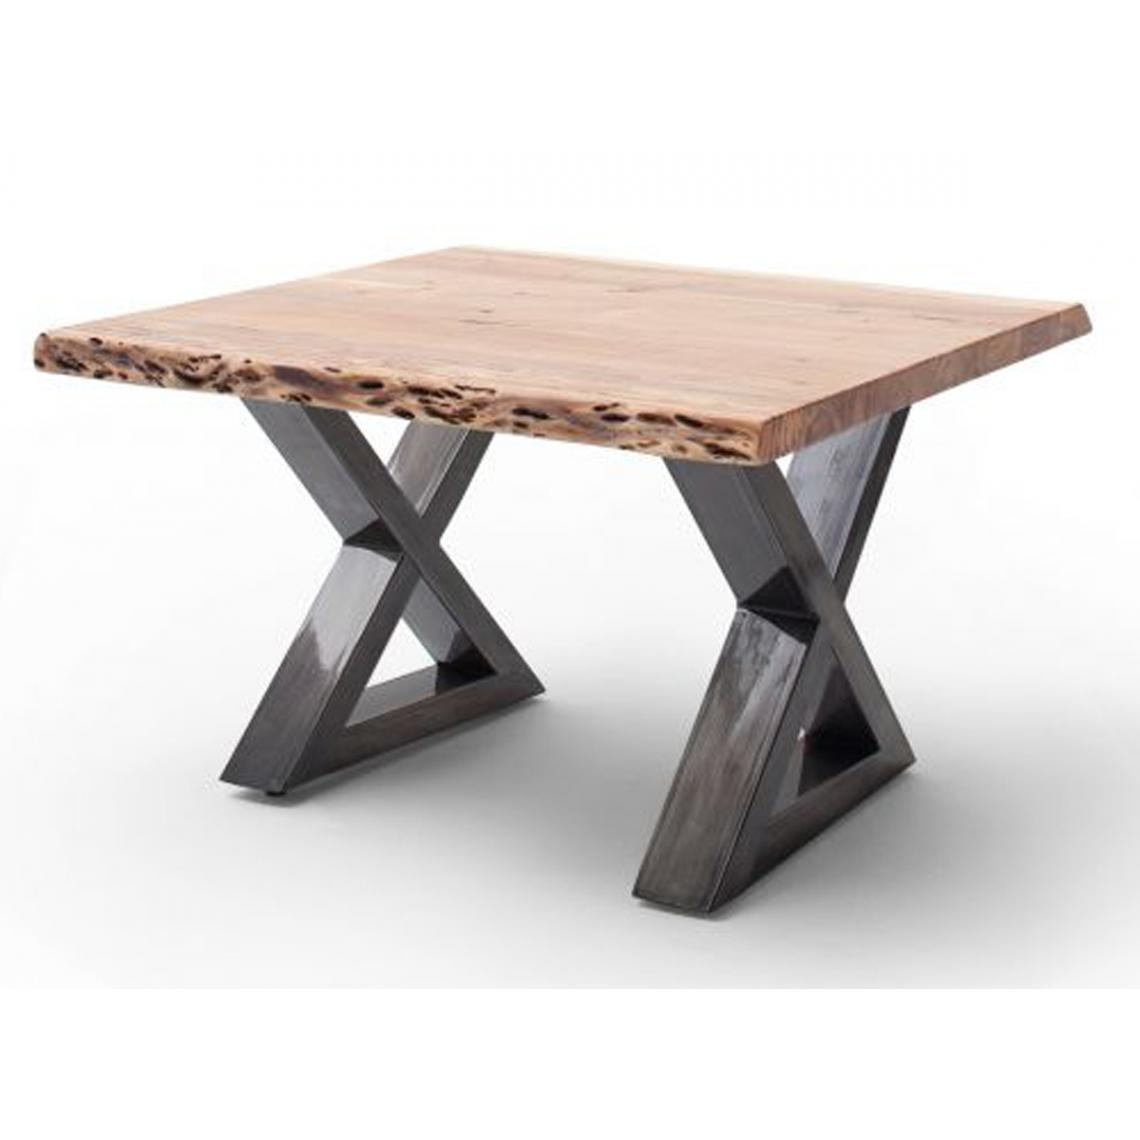 Pegane - Table basse en bois d'acacia massif naturel / acier antique - L.75 x H.45 x P.75 cm - Tables basses